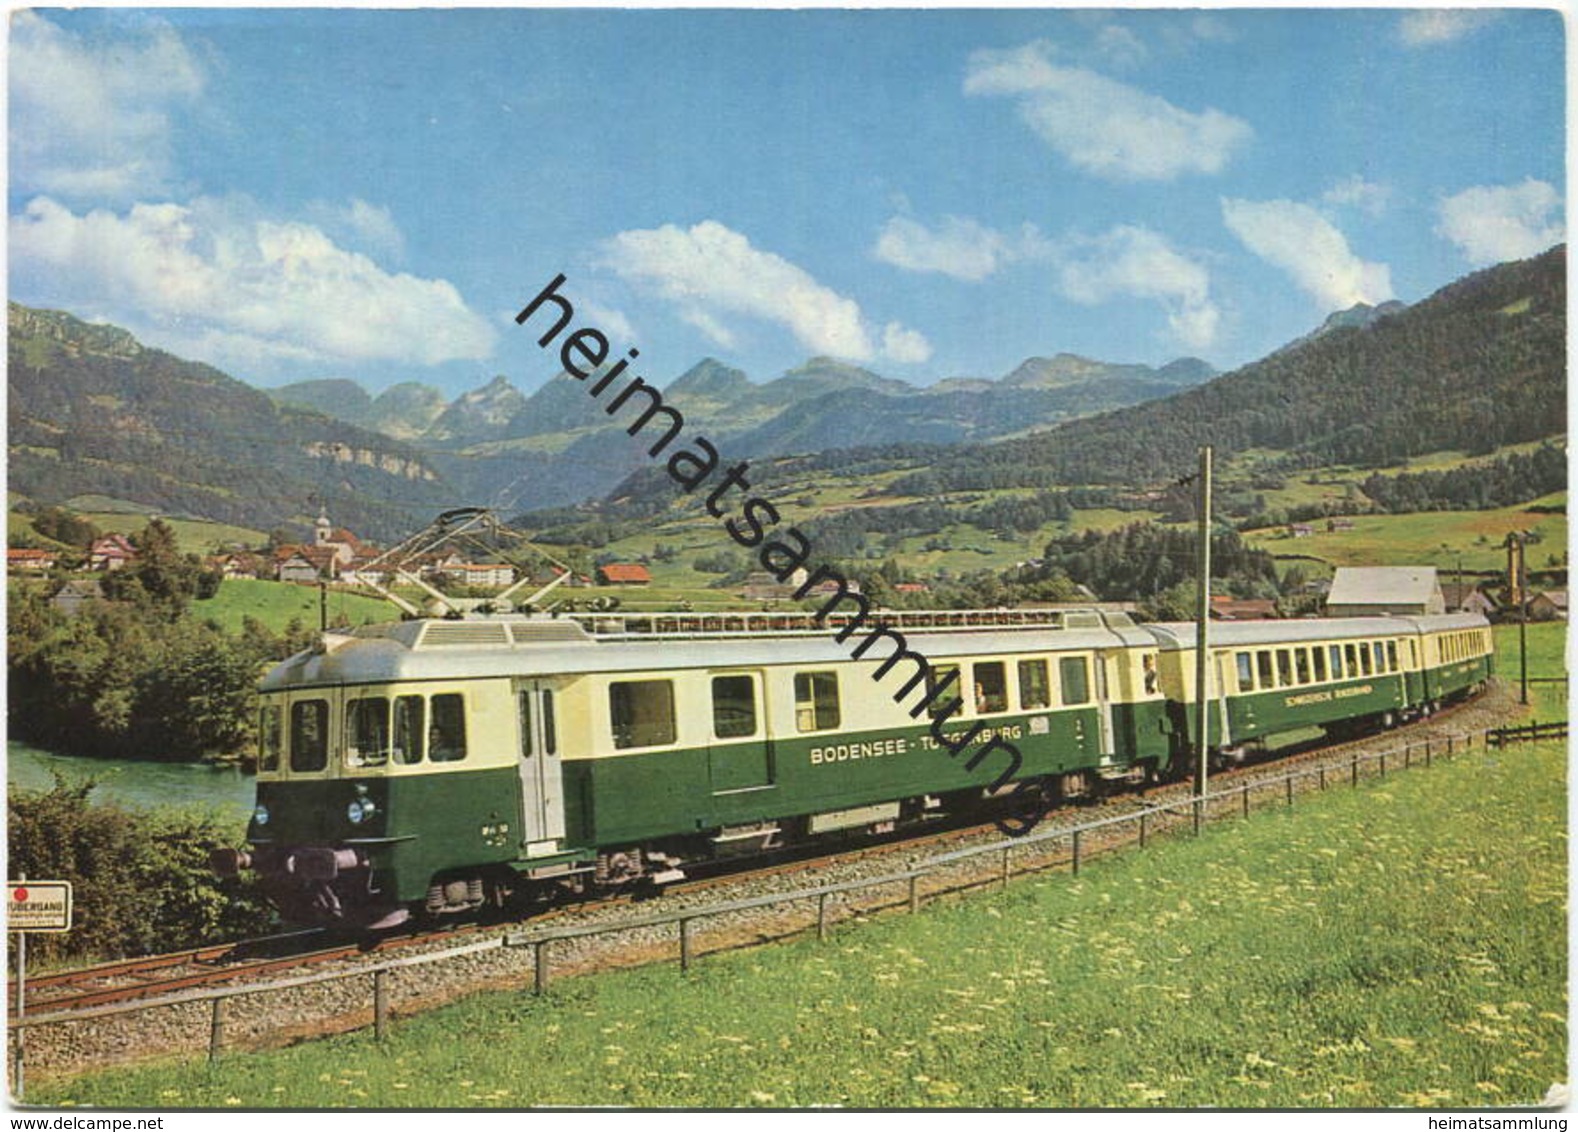 Bodensee Toggenburg Bahn - Vierteiliger Pendelzug Bei Nesslau Neu St. Johann - AK Grossformat - Verlag J. Kleiner Bern - - Nesslau